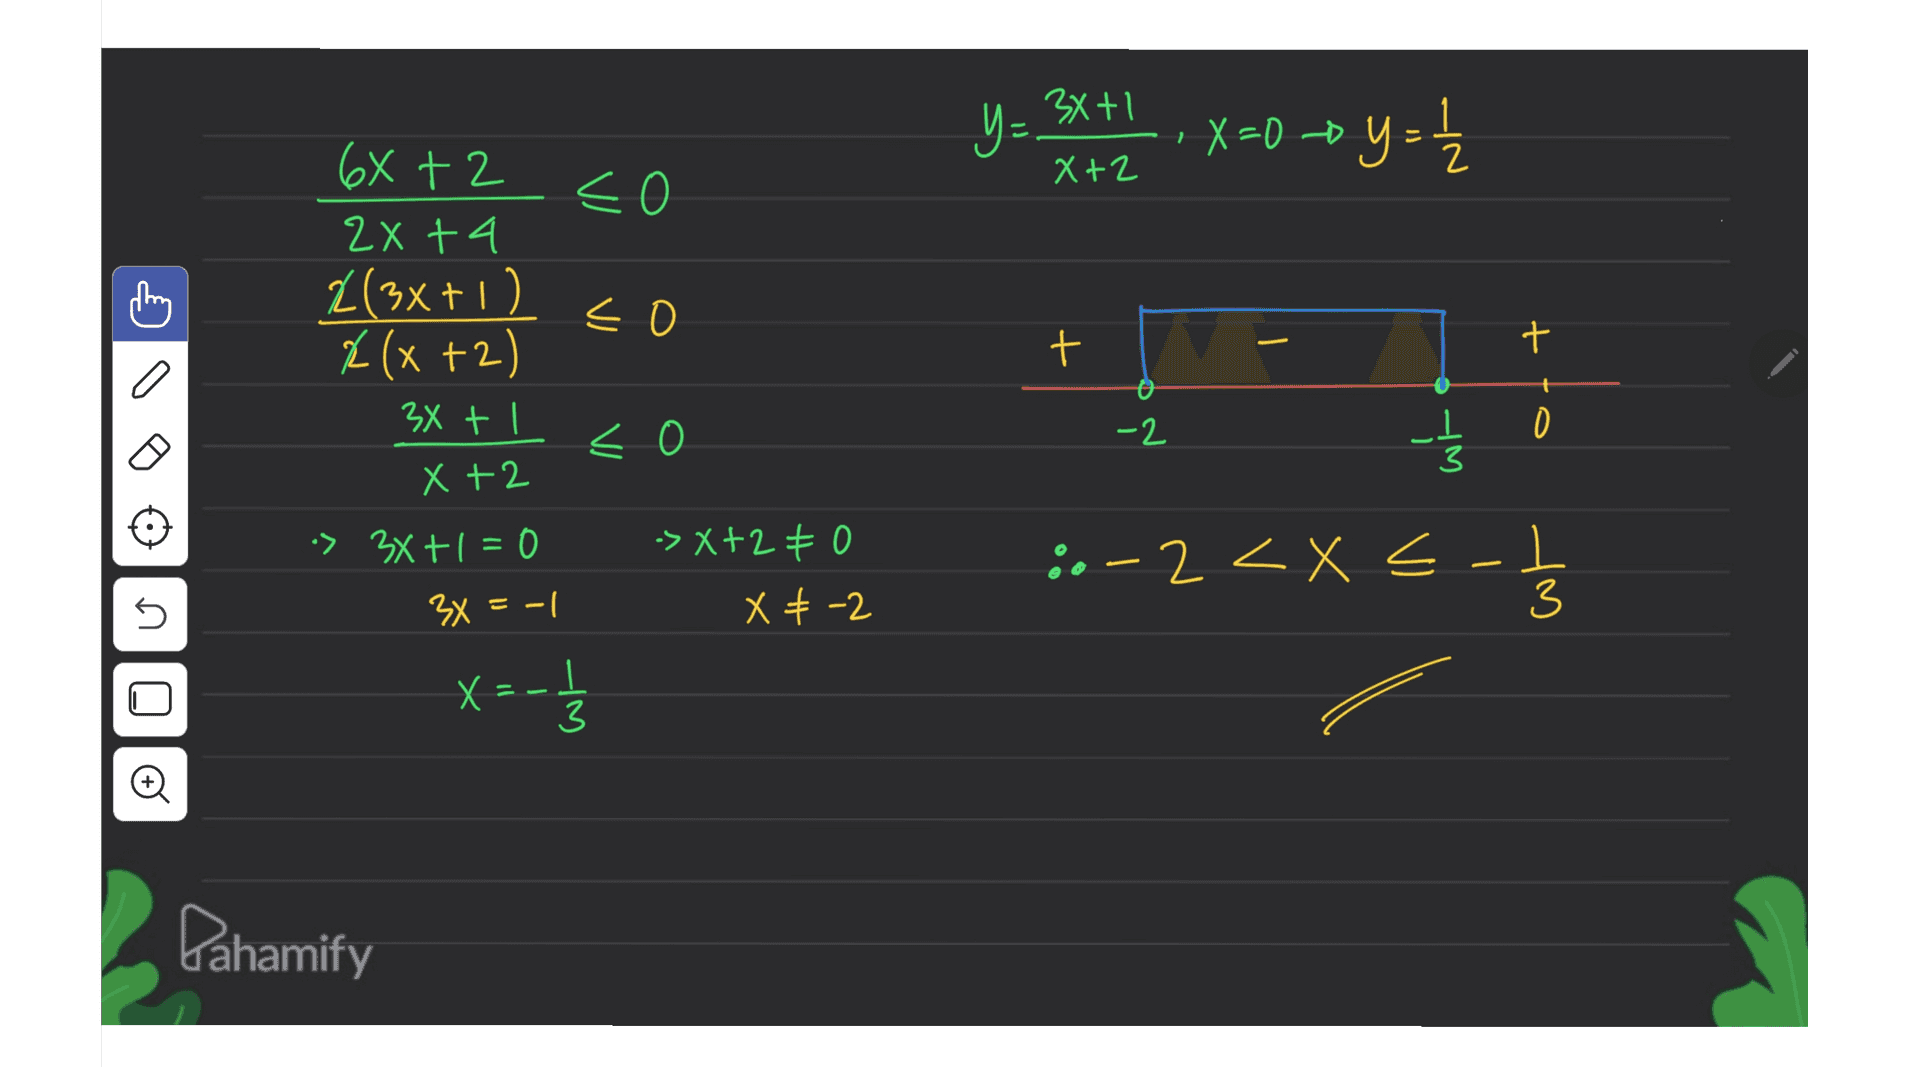 3x+1 Y= X+2 1 X=0 + y = 1 1 03 68 +2 2x + 4 2(3x+1) é (x+2) 3x + 1 < 구 Х t -2 2 O 0 Wh X +2 - ::2. :> 3x + 1 = 0 -> X+2 € 0 X € -2 T-3 X 77-03 T- ti s 3x = -1 XE x=-1 Х I 3 Pahamify 